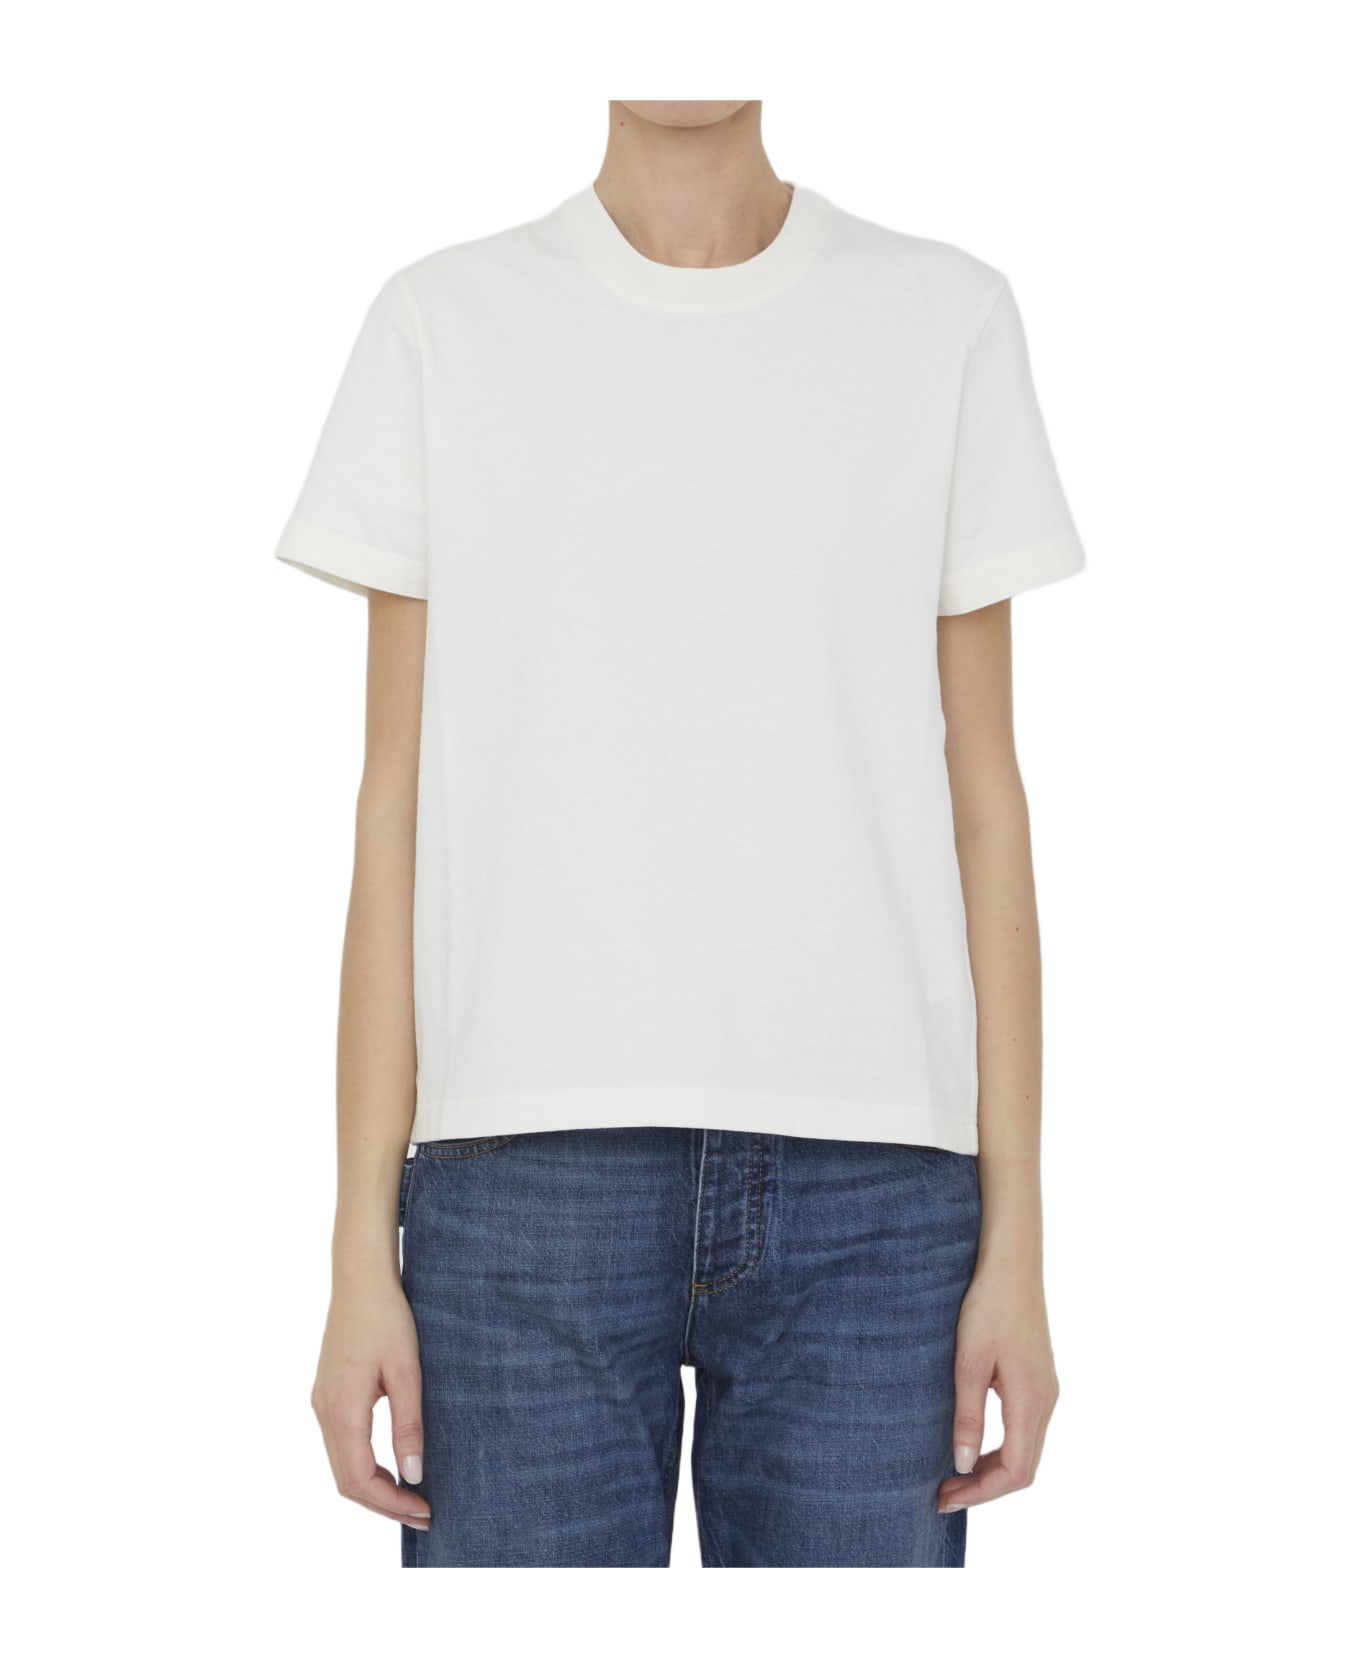 Bottega Veneta White Cotton T-shirt - WHITE